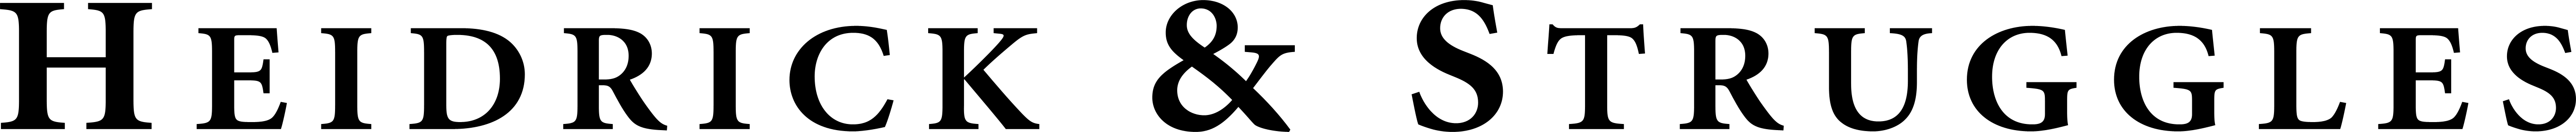 Logo heidrick struggles